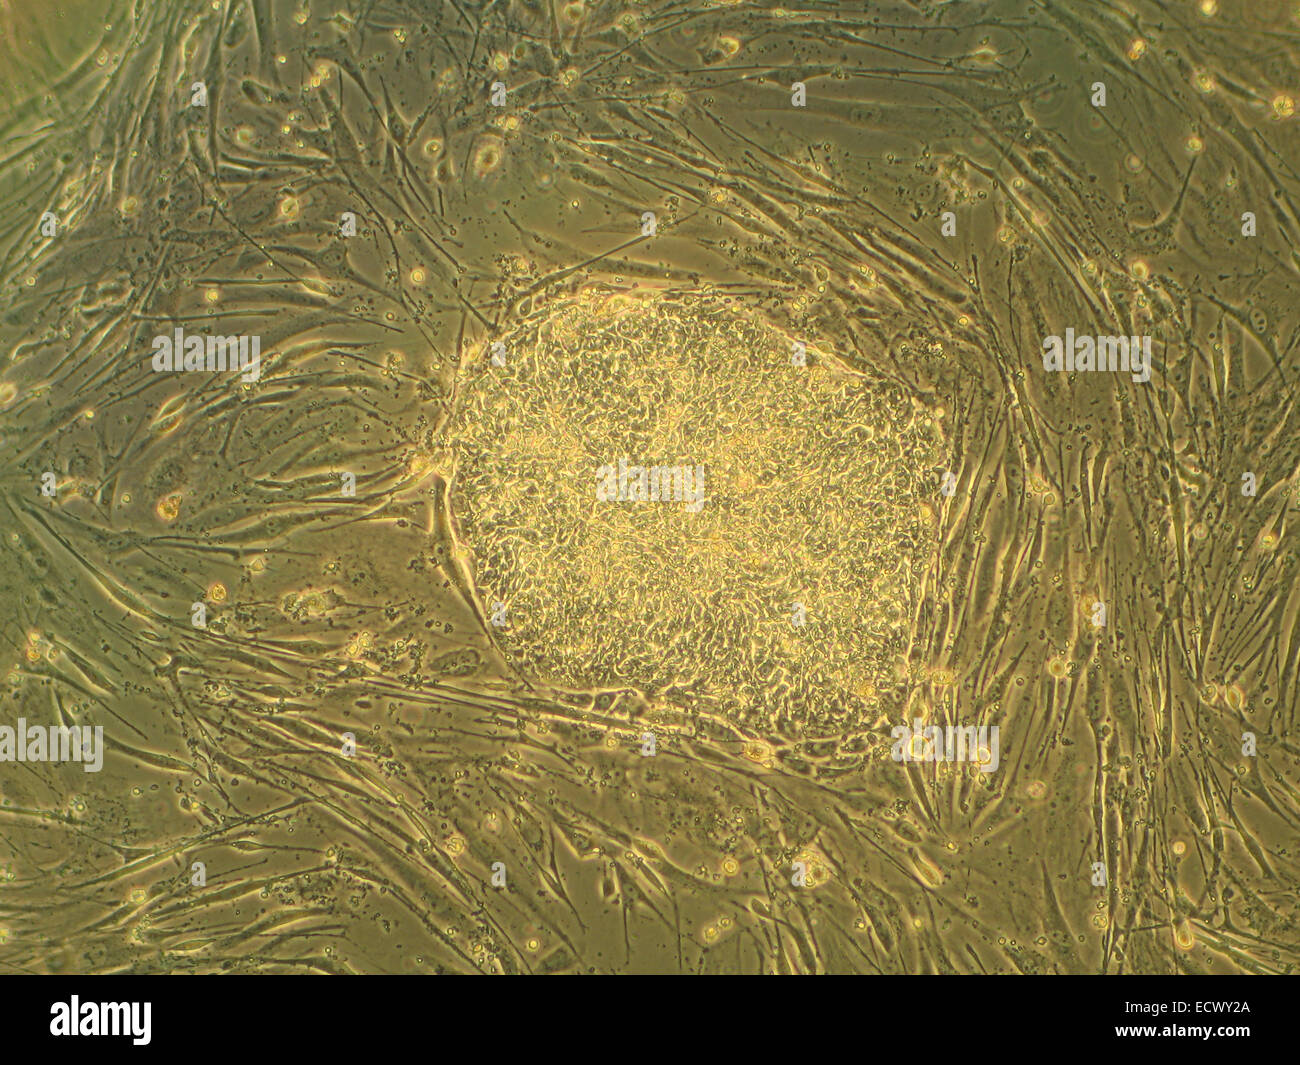 Colonie de cellules souches embryonnaires humaines. Banque D'Images